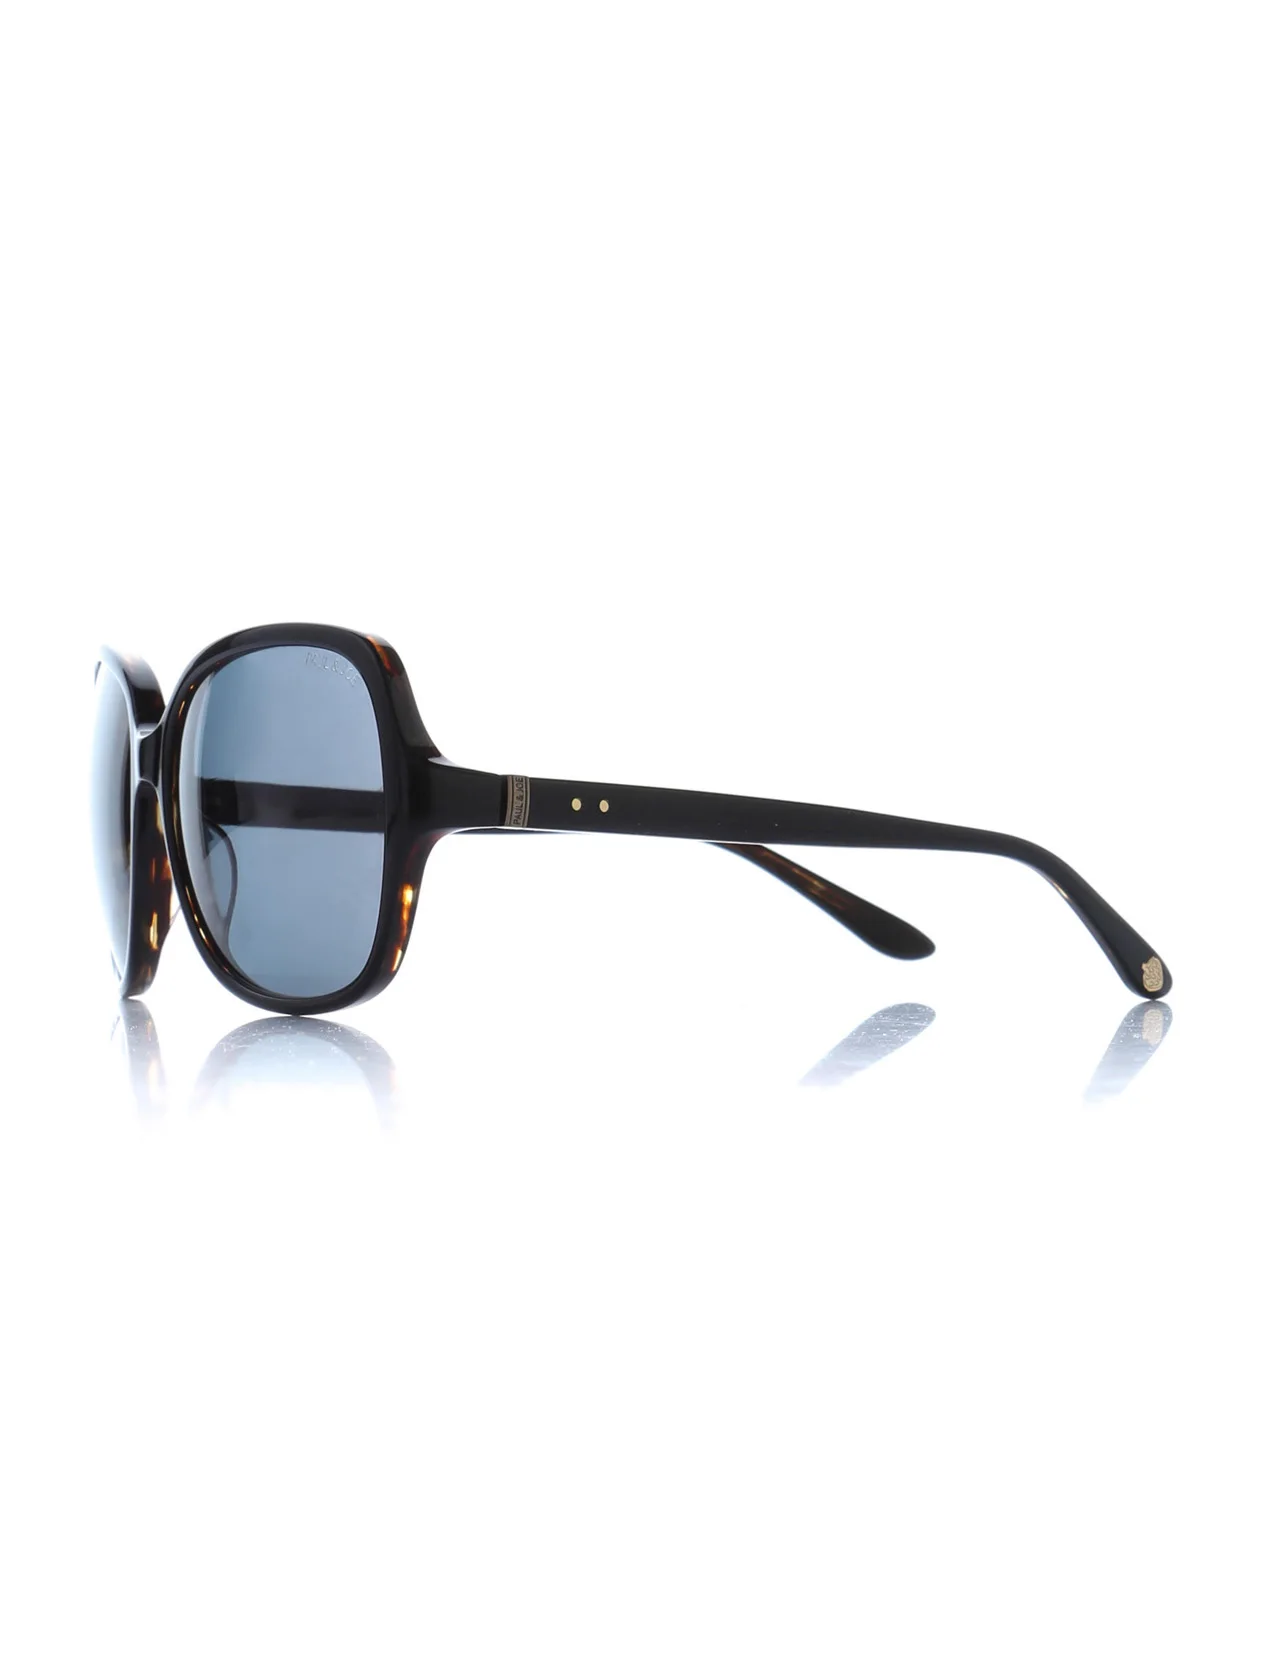 

Women's sunglasses pj fragola02 noec bone black organic square square 58-17-135 paul / joe